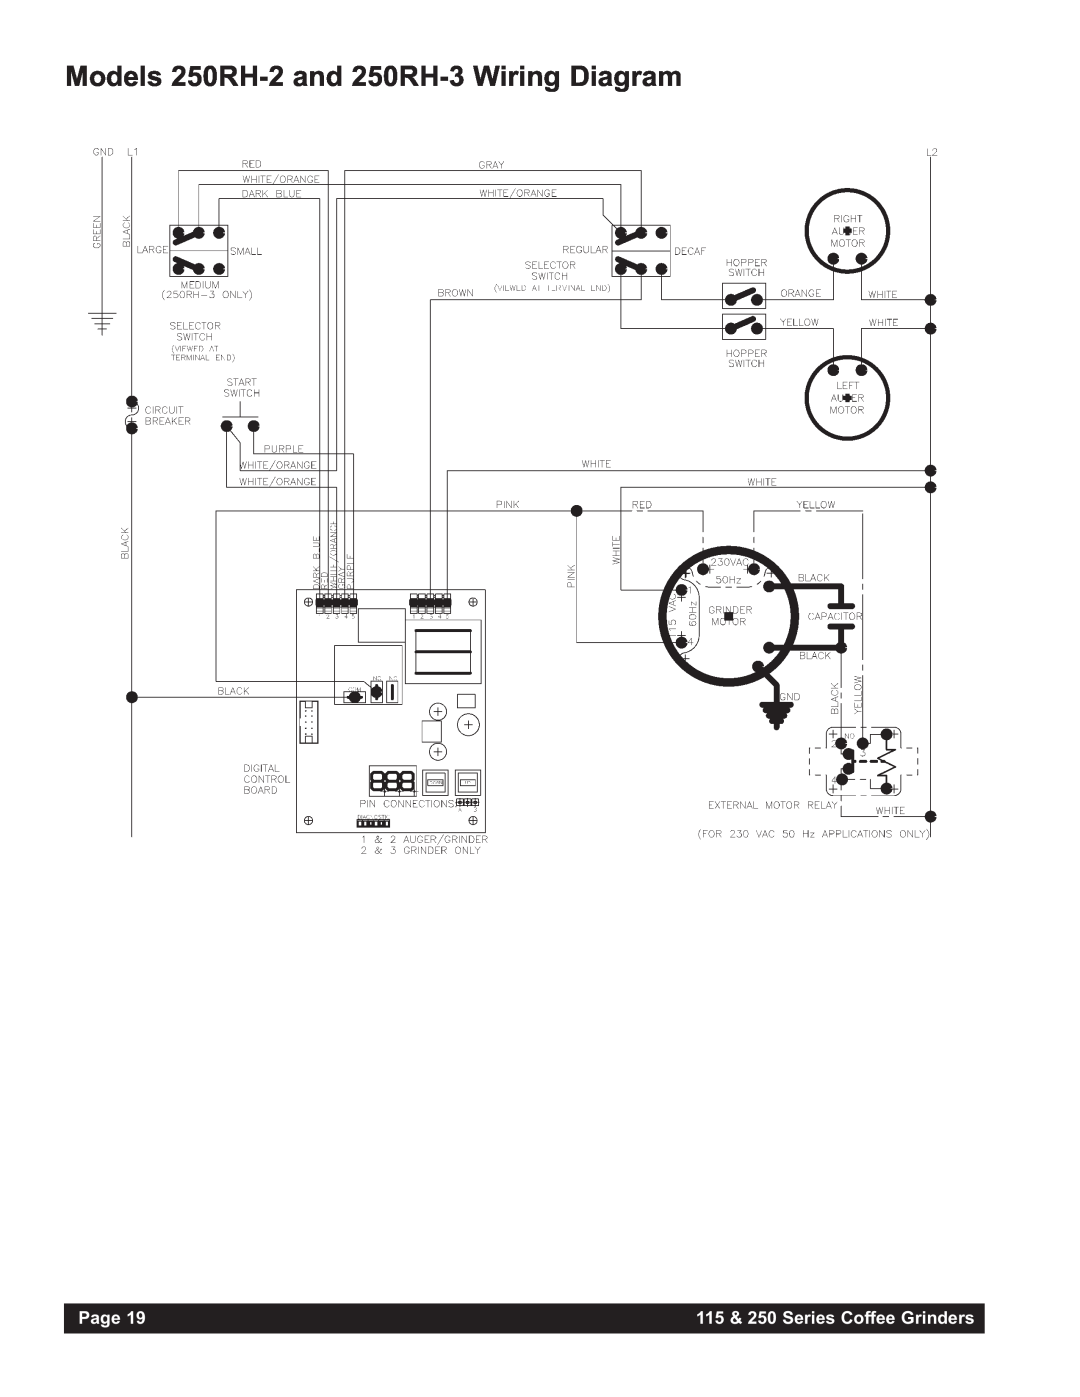 Grindmaster 250AB, 115AB Models 250RH-2 and 250RH-3 Wiring Diagram, Page, 115 & 250 Series Coffee Grinders 